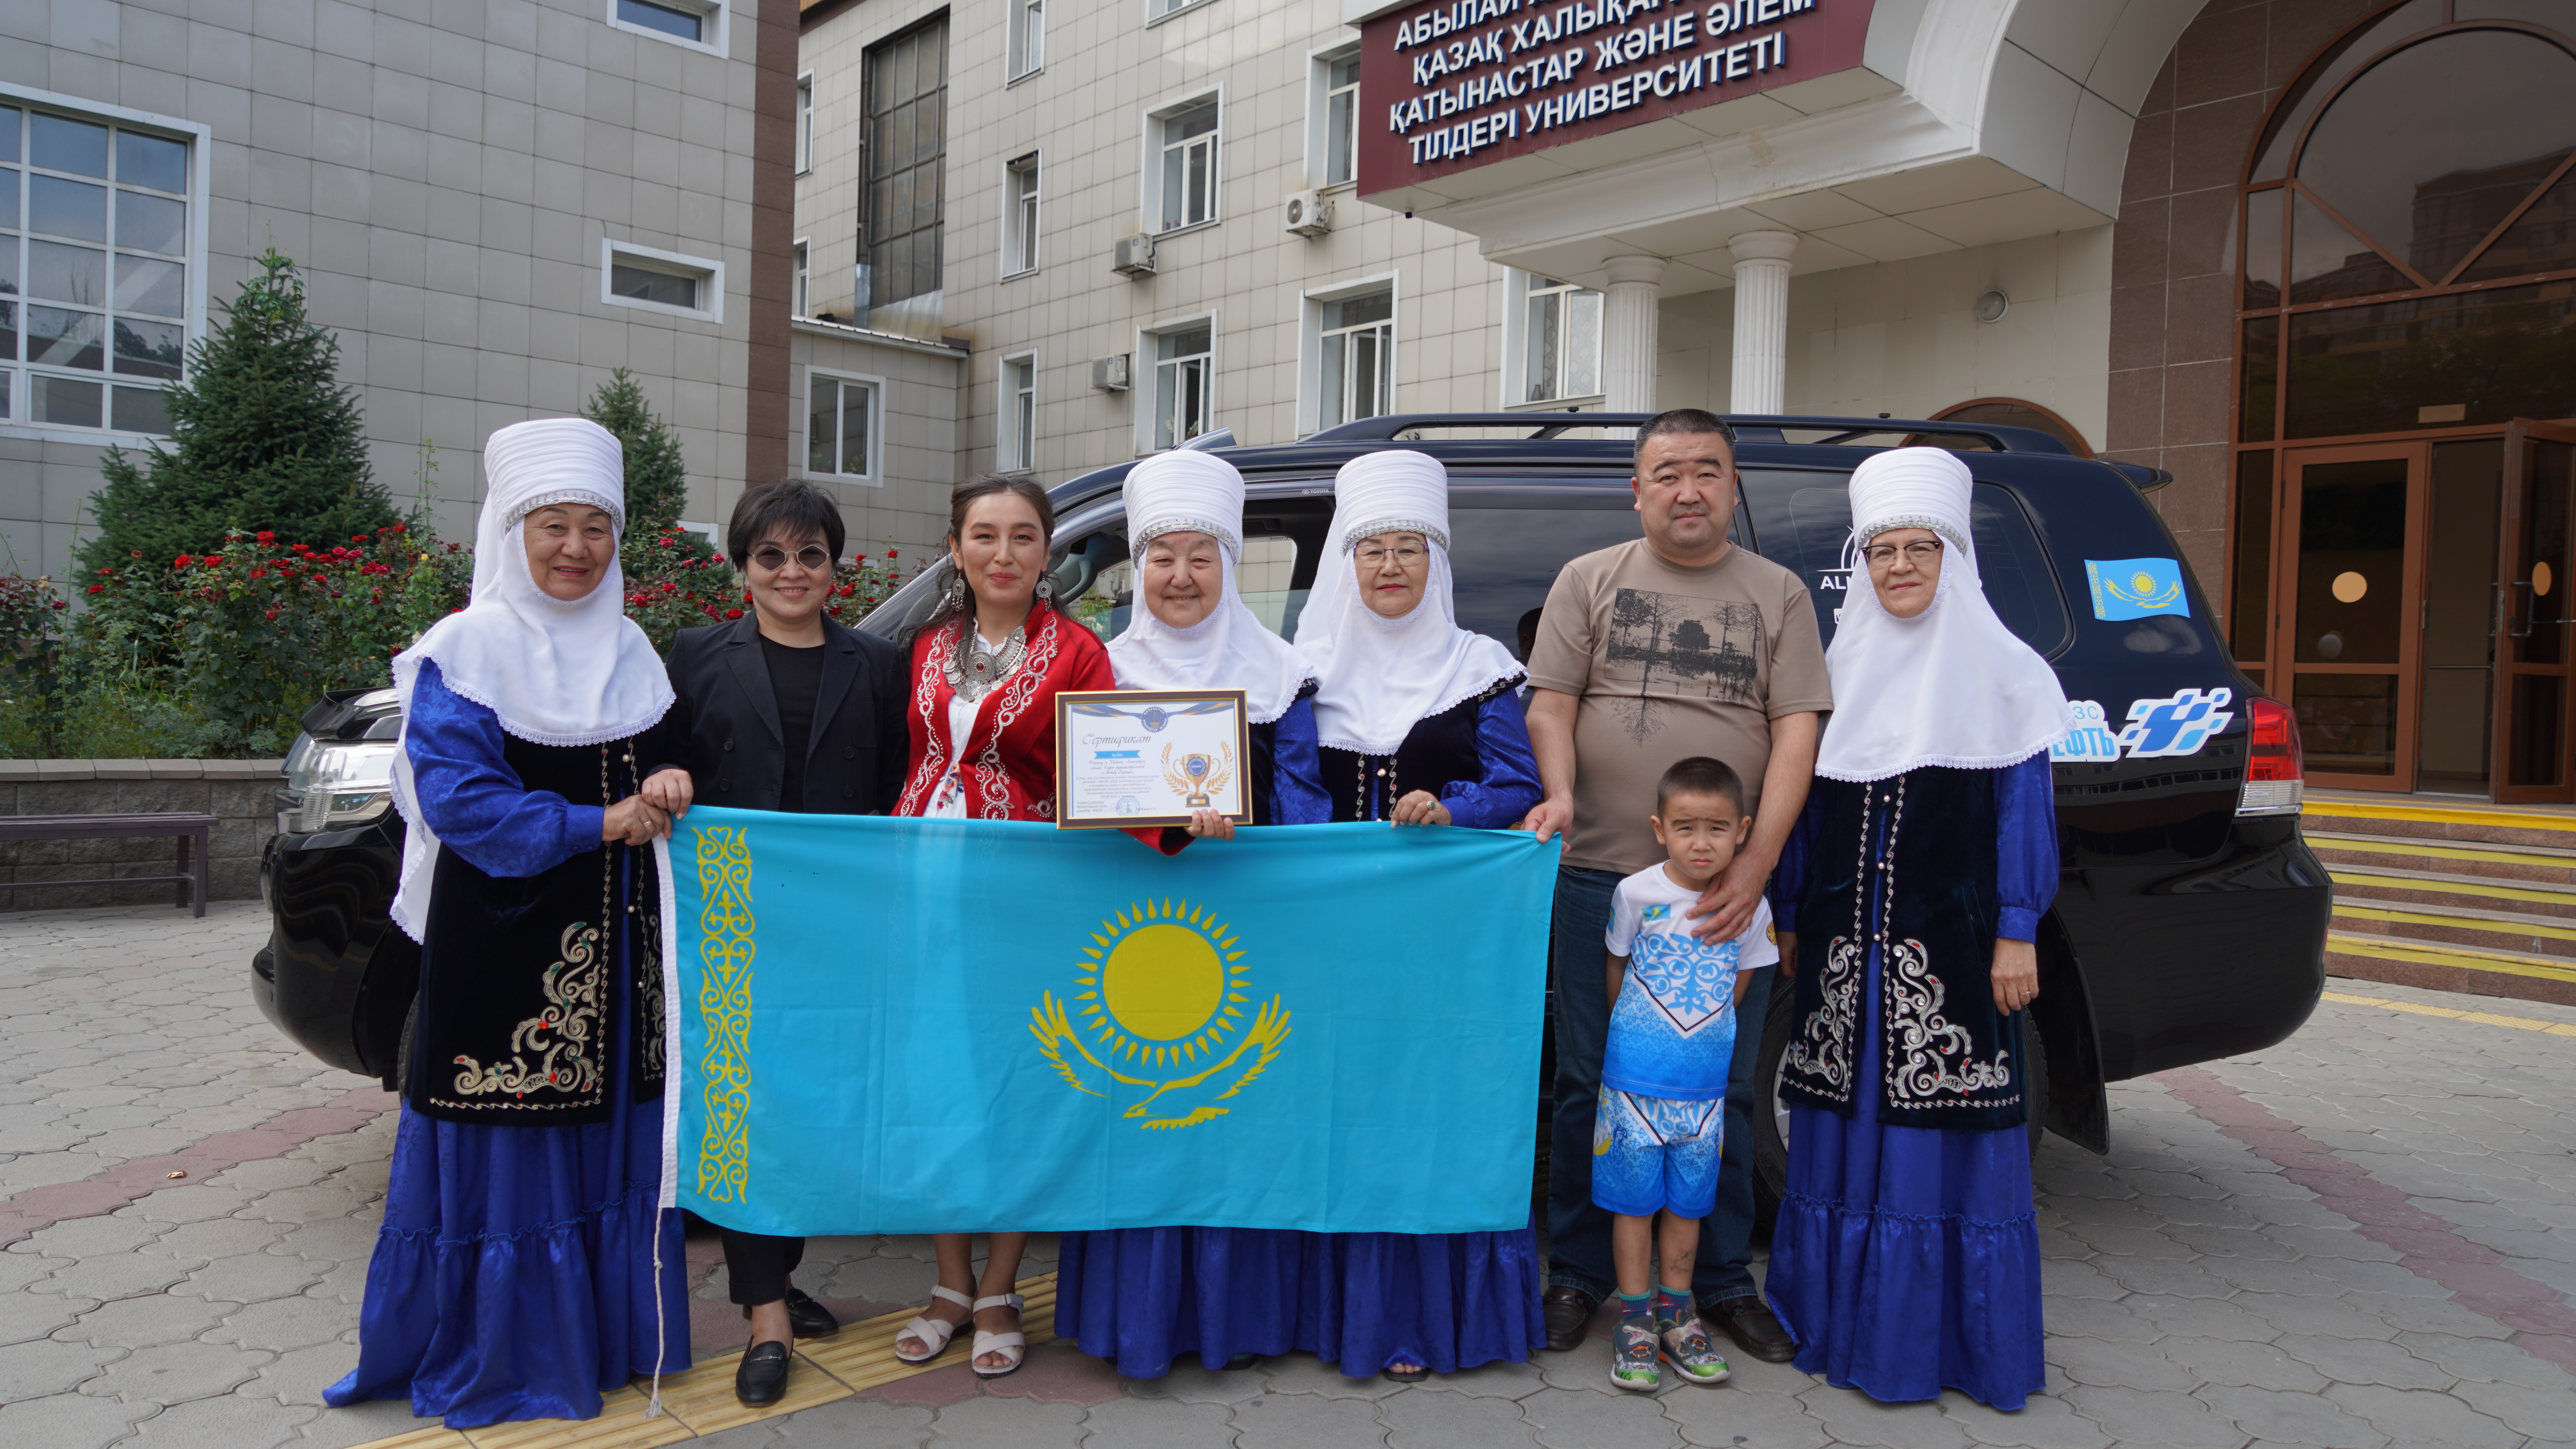 Многодетная семья из Алматы попала в Книгу рекордов Казахстана